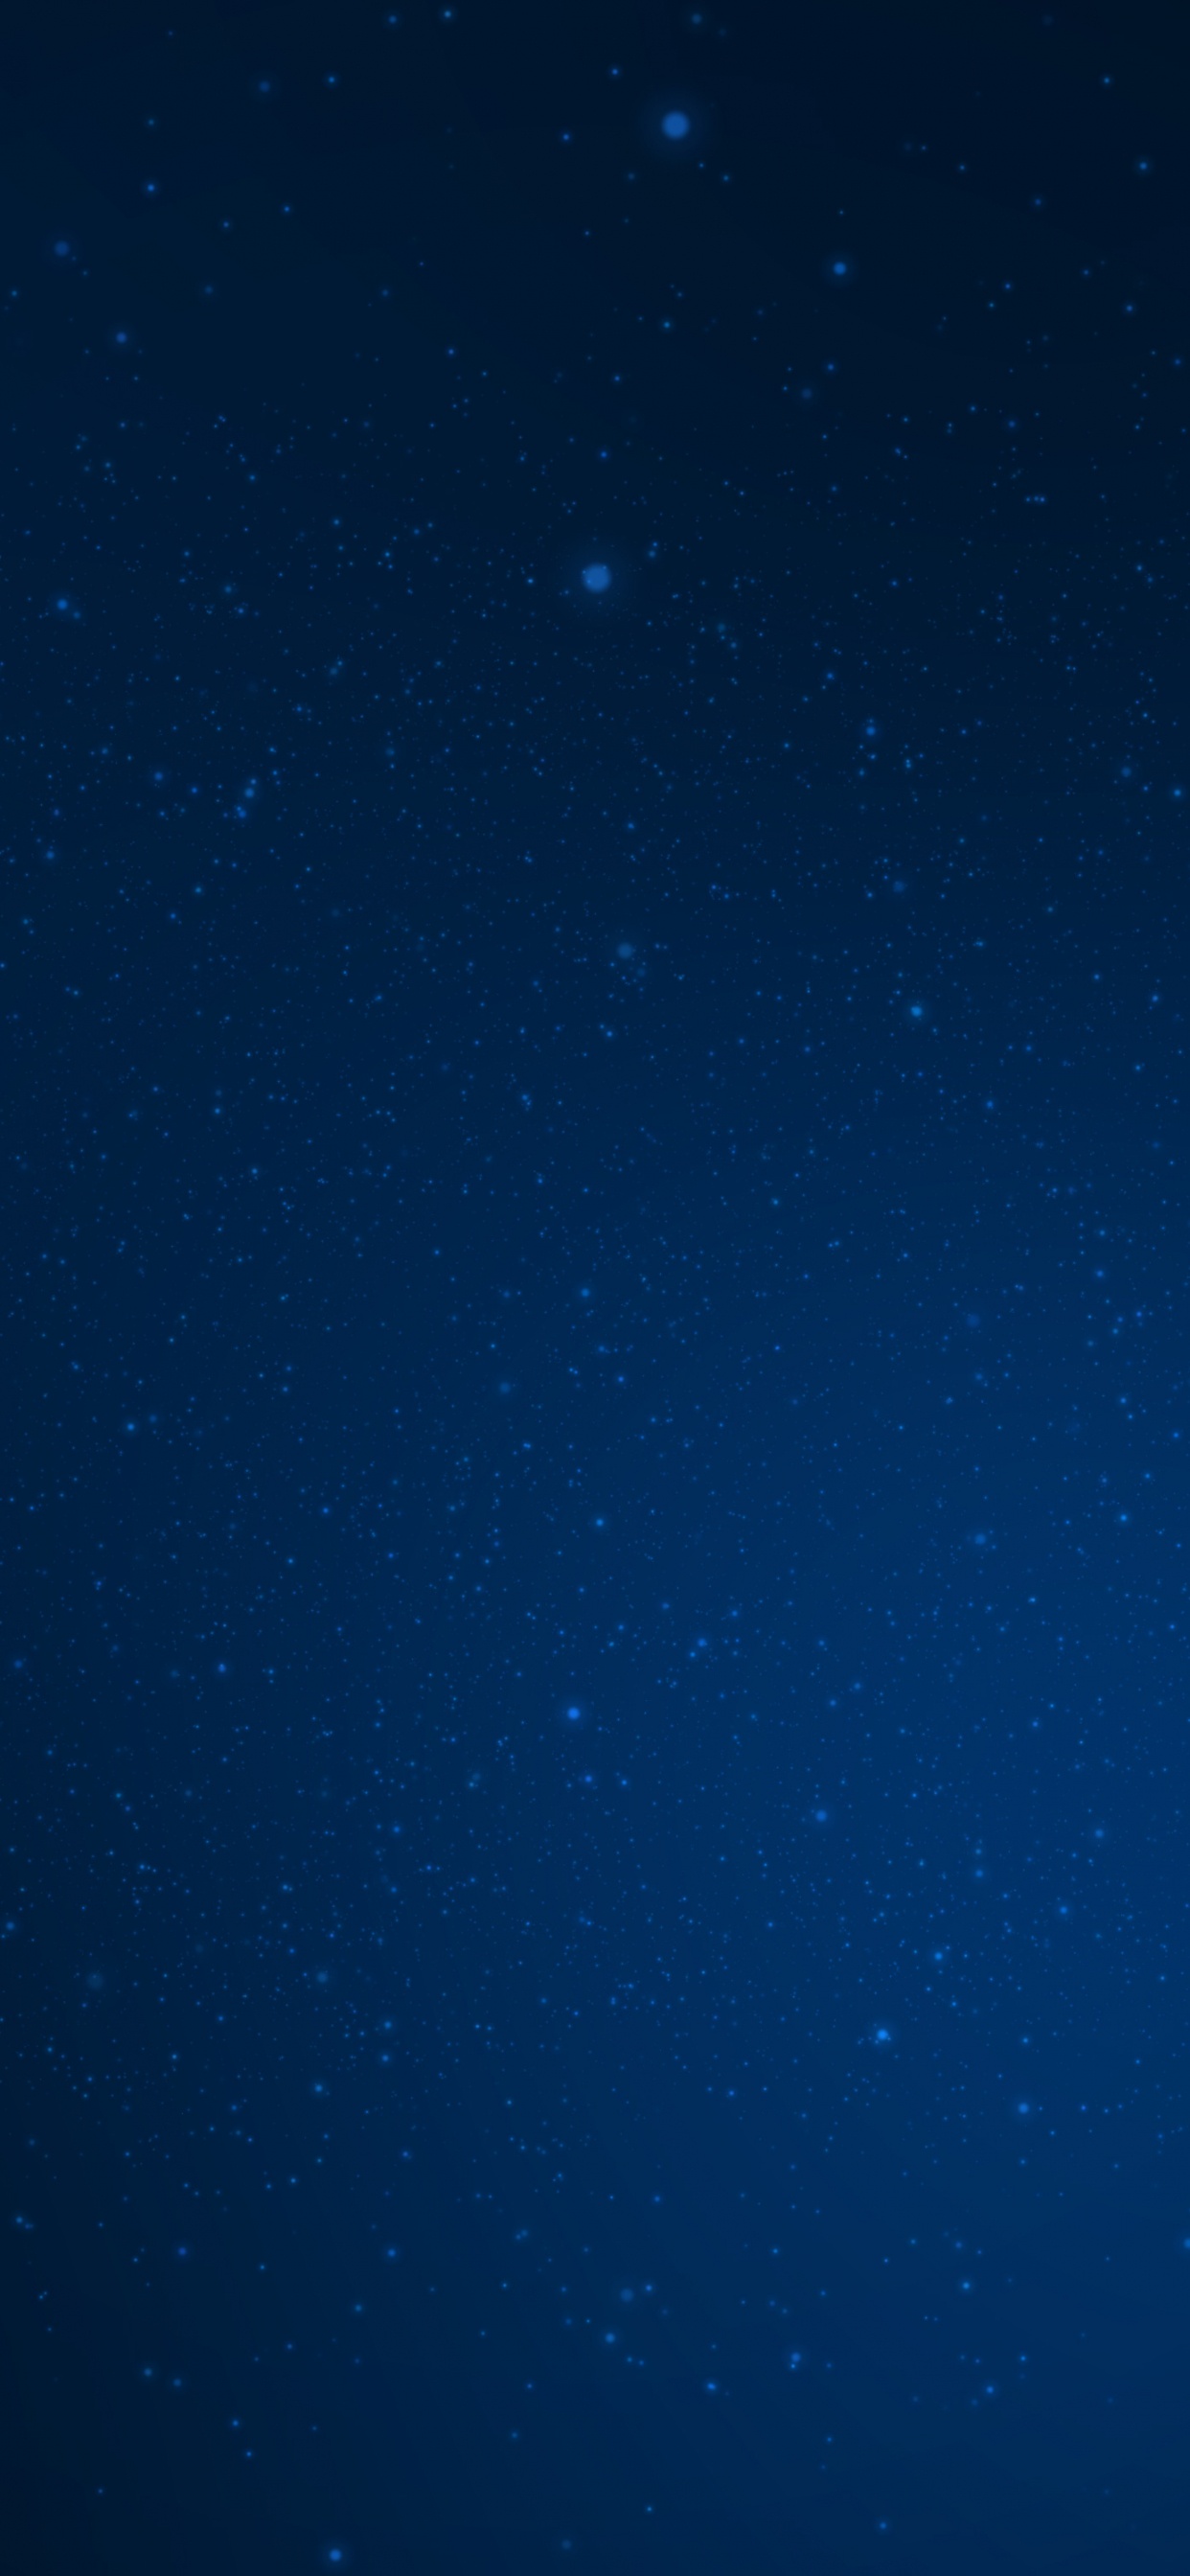 Ciel Bleu Avec Des Étoiles Pendant la Nuit. Wallpaper in 1242x2688 Resolution